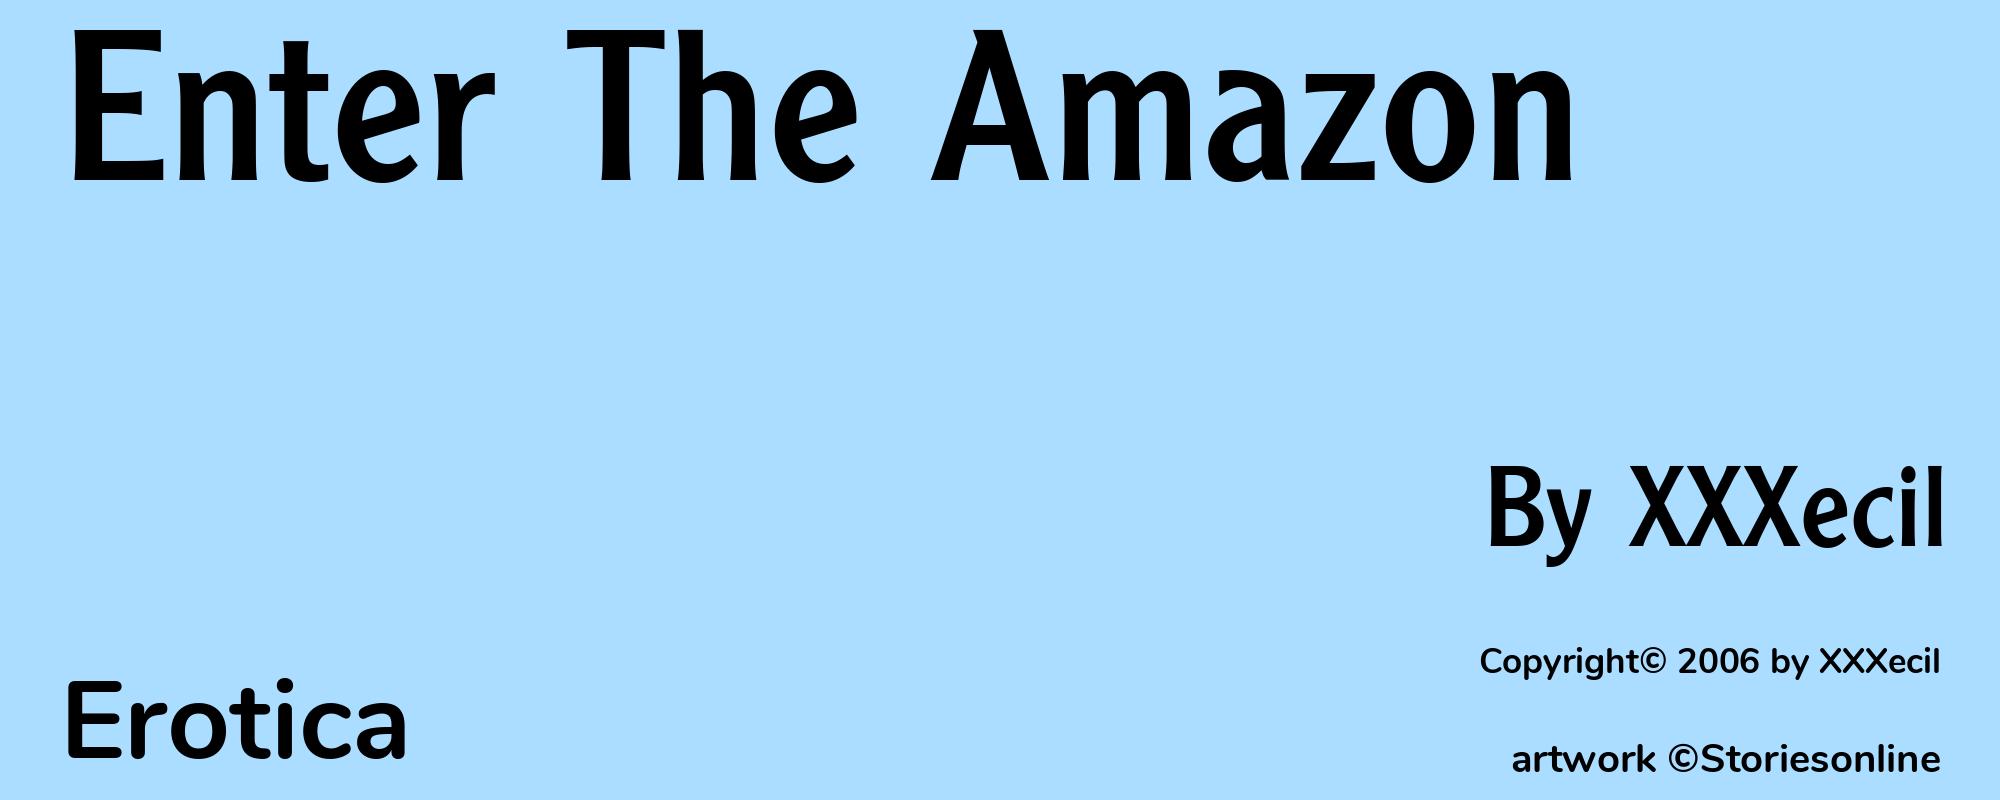 Enter The Amazon - Cover